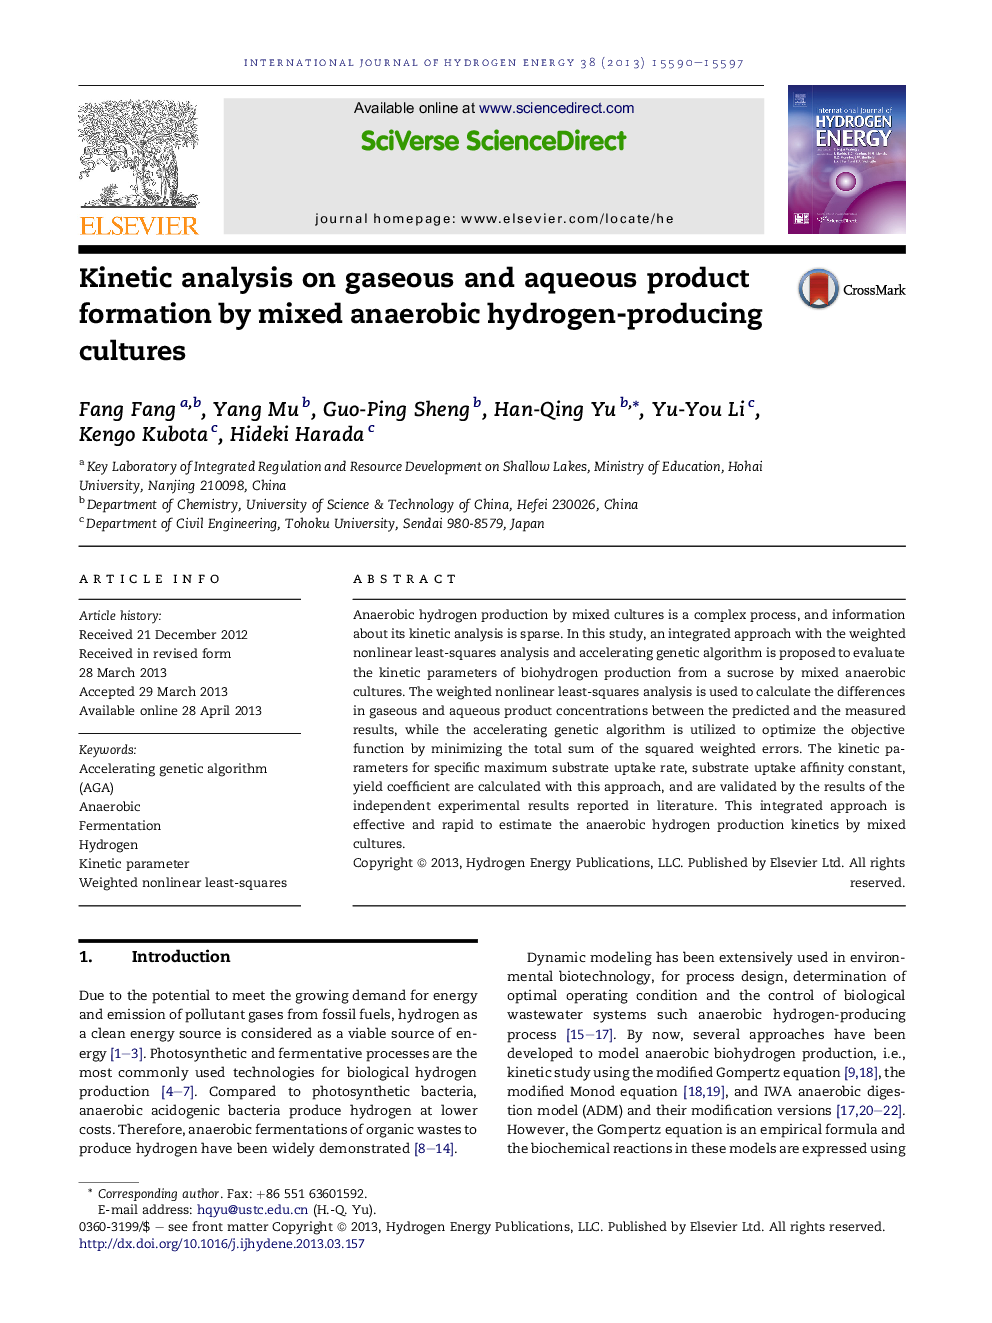 آنالیز سینتیکی در تولید محصولات گاز و آب به وسیله مخلوط های تولید هیدروژن تولید شده توسط آنابازی مخلوط 